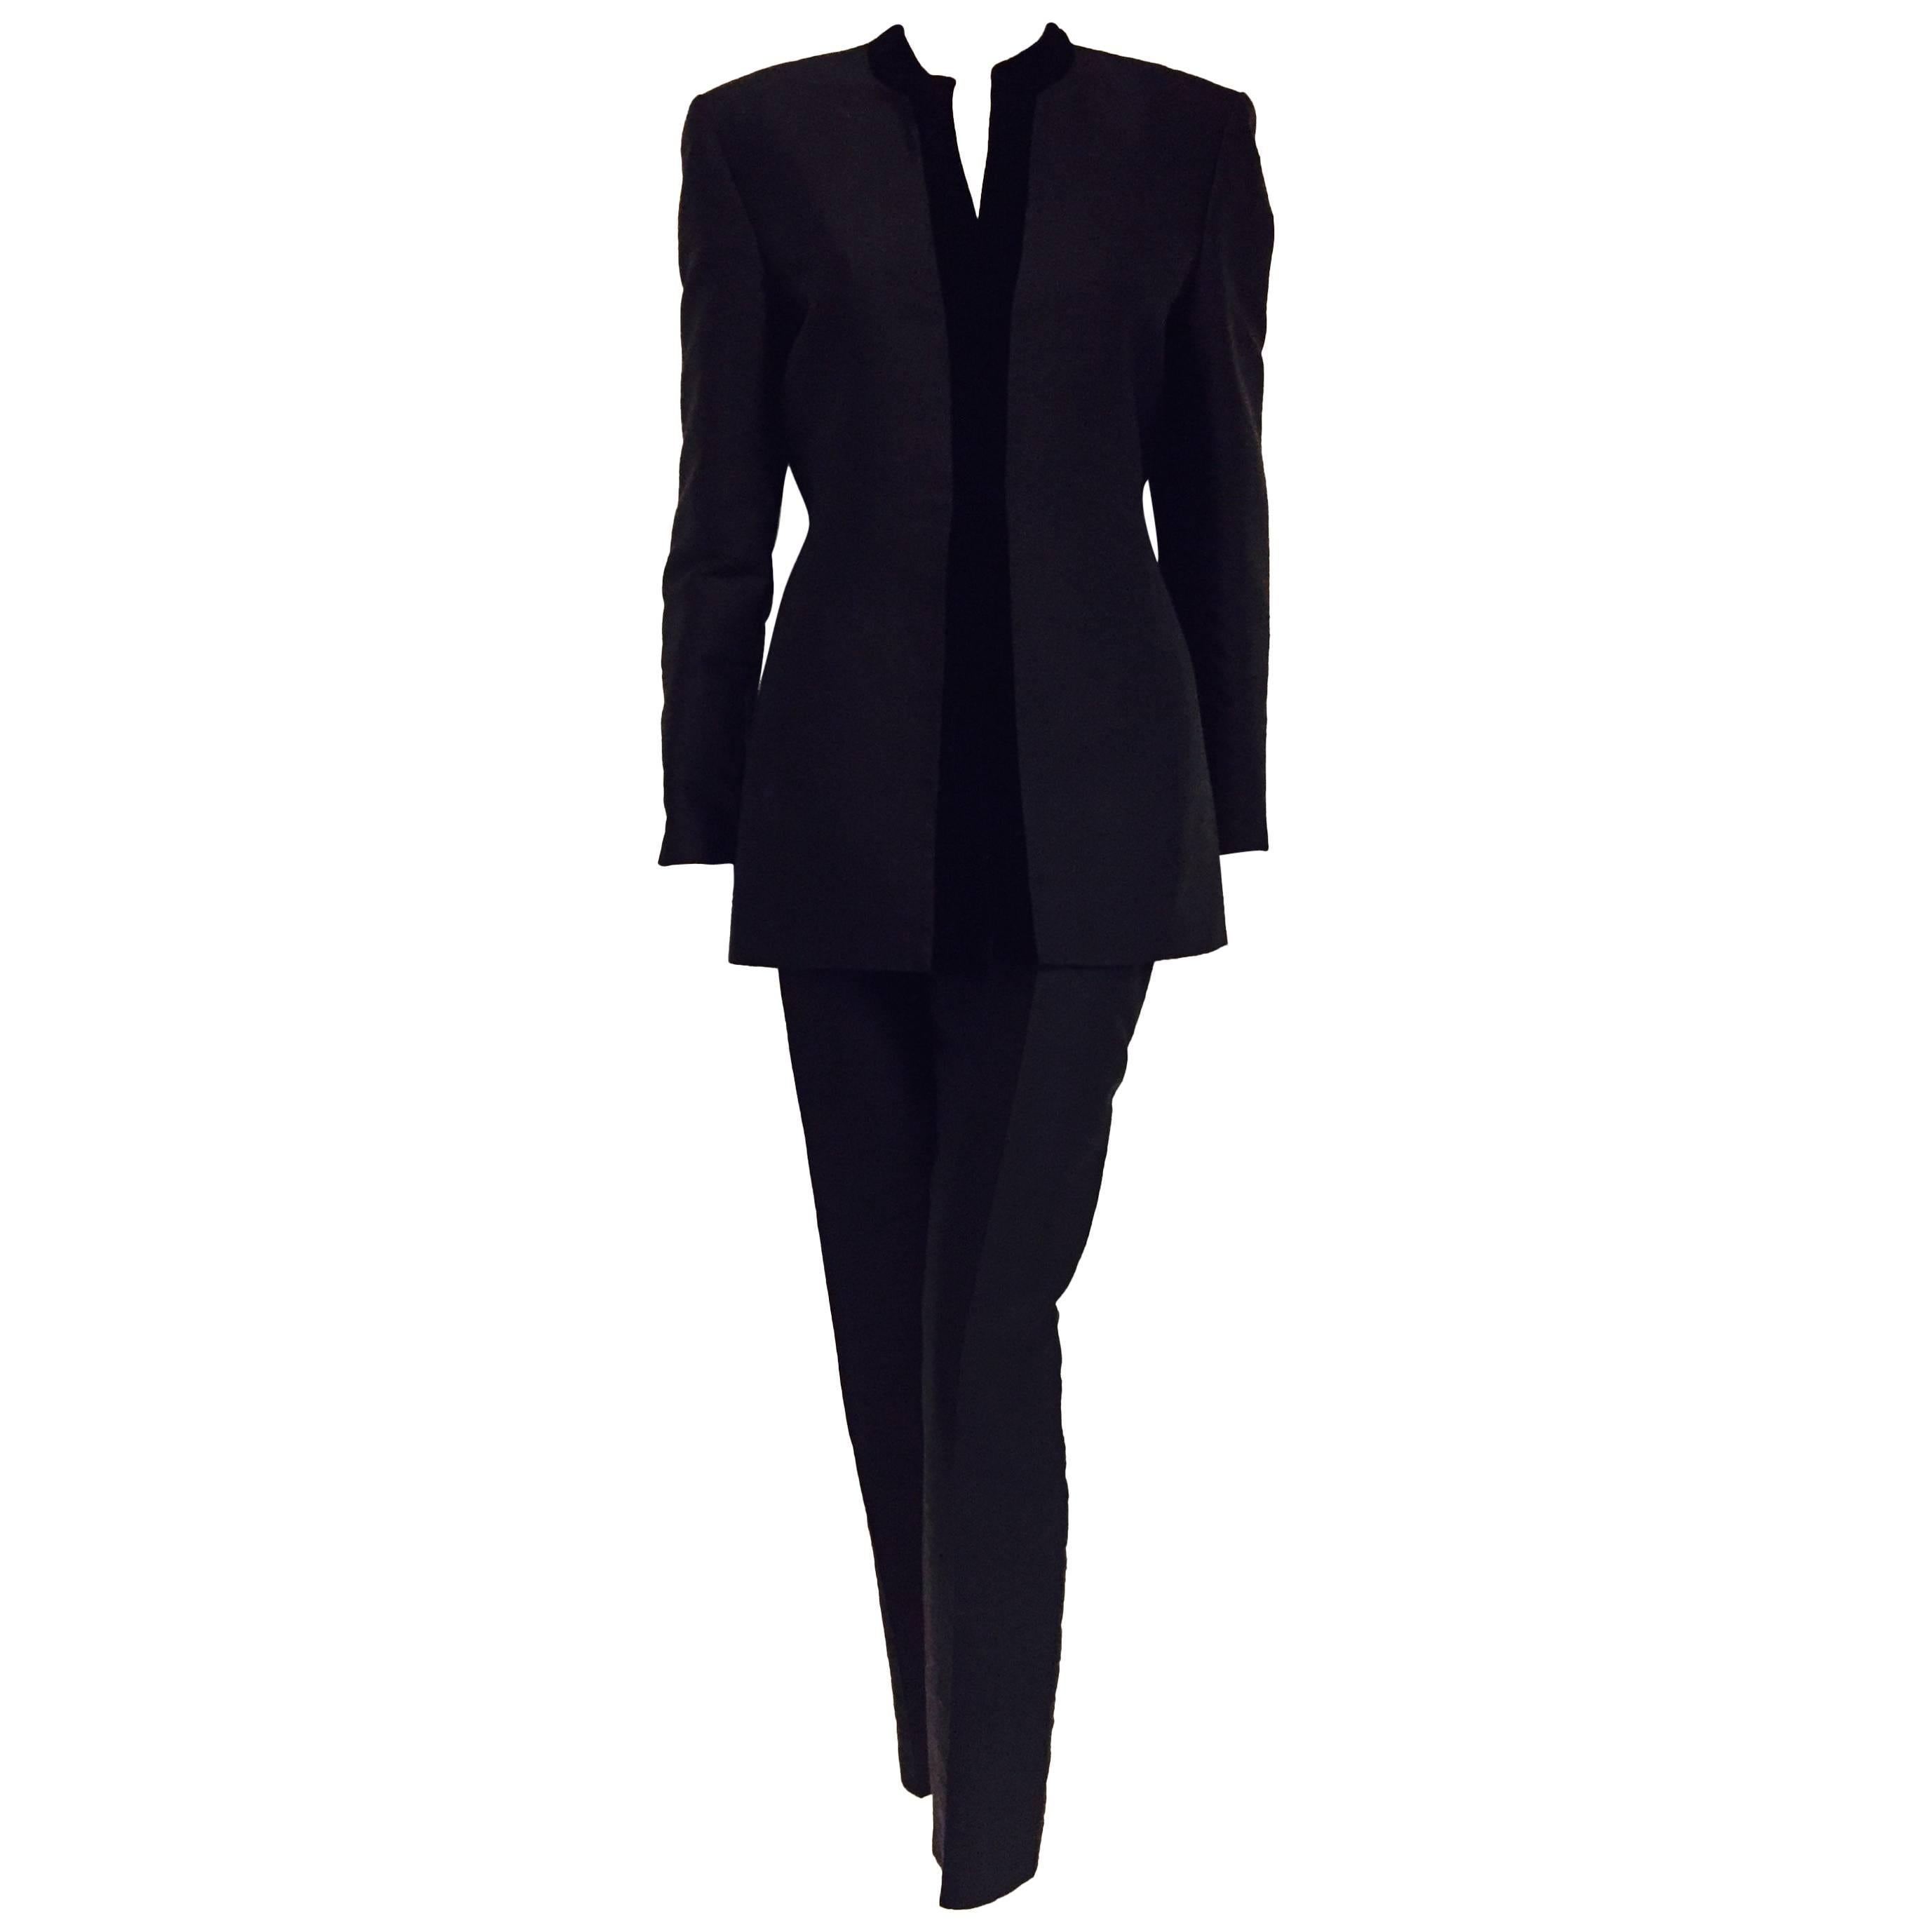  Outstanding Oscar de la Renta's Detailed Black Silk Pant Suit with Velvet Trim  For Sale